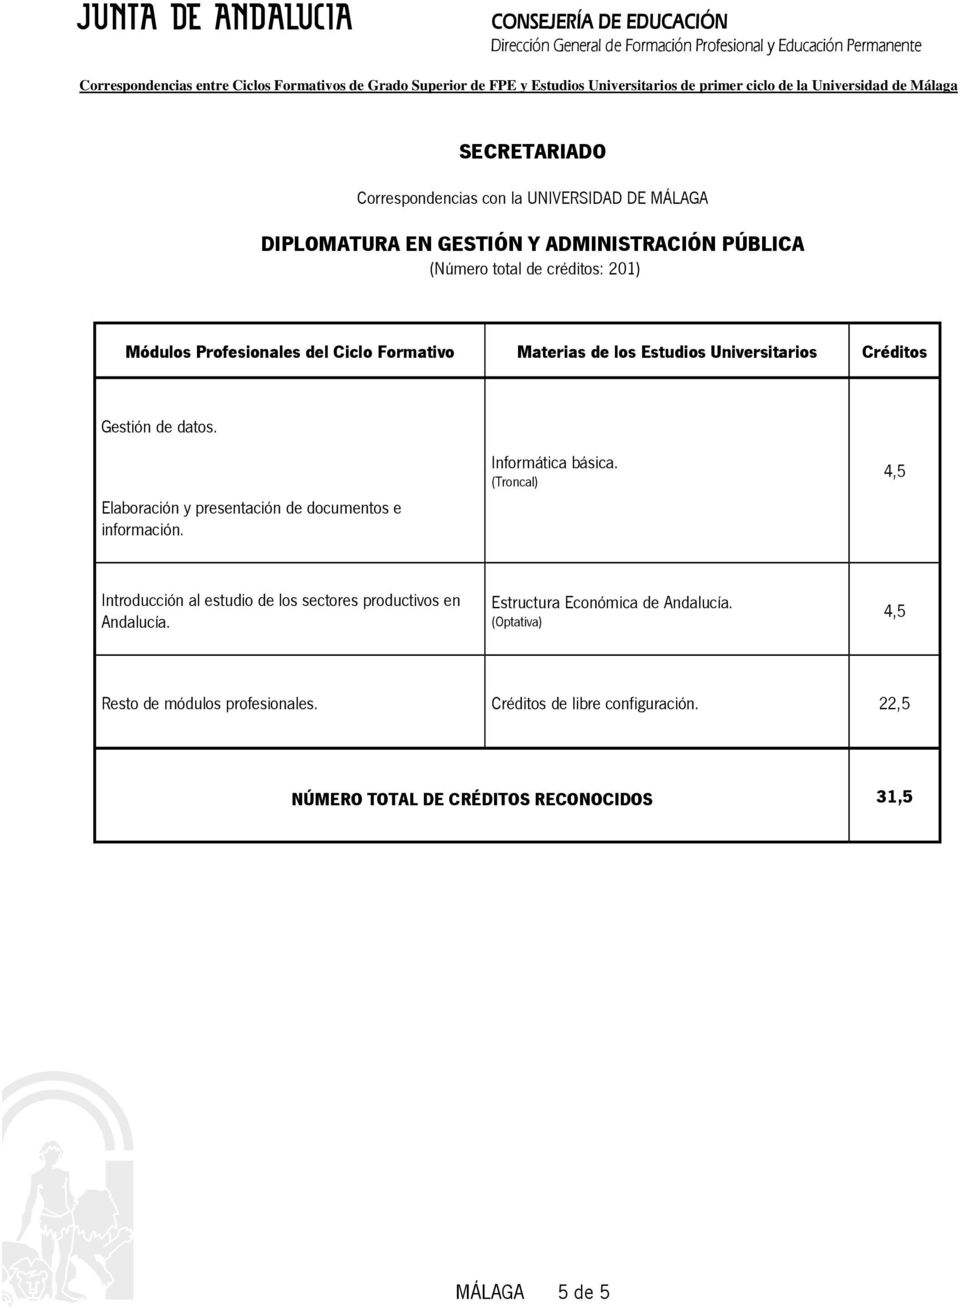 Introducción al estudio de los sectores productivos en Andalucía. Estructura Económica de Andalucía.